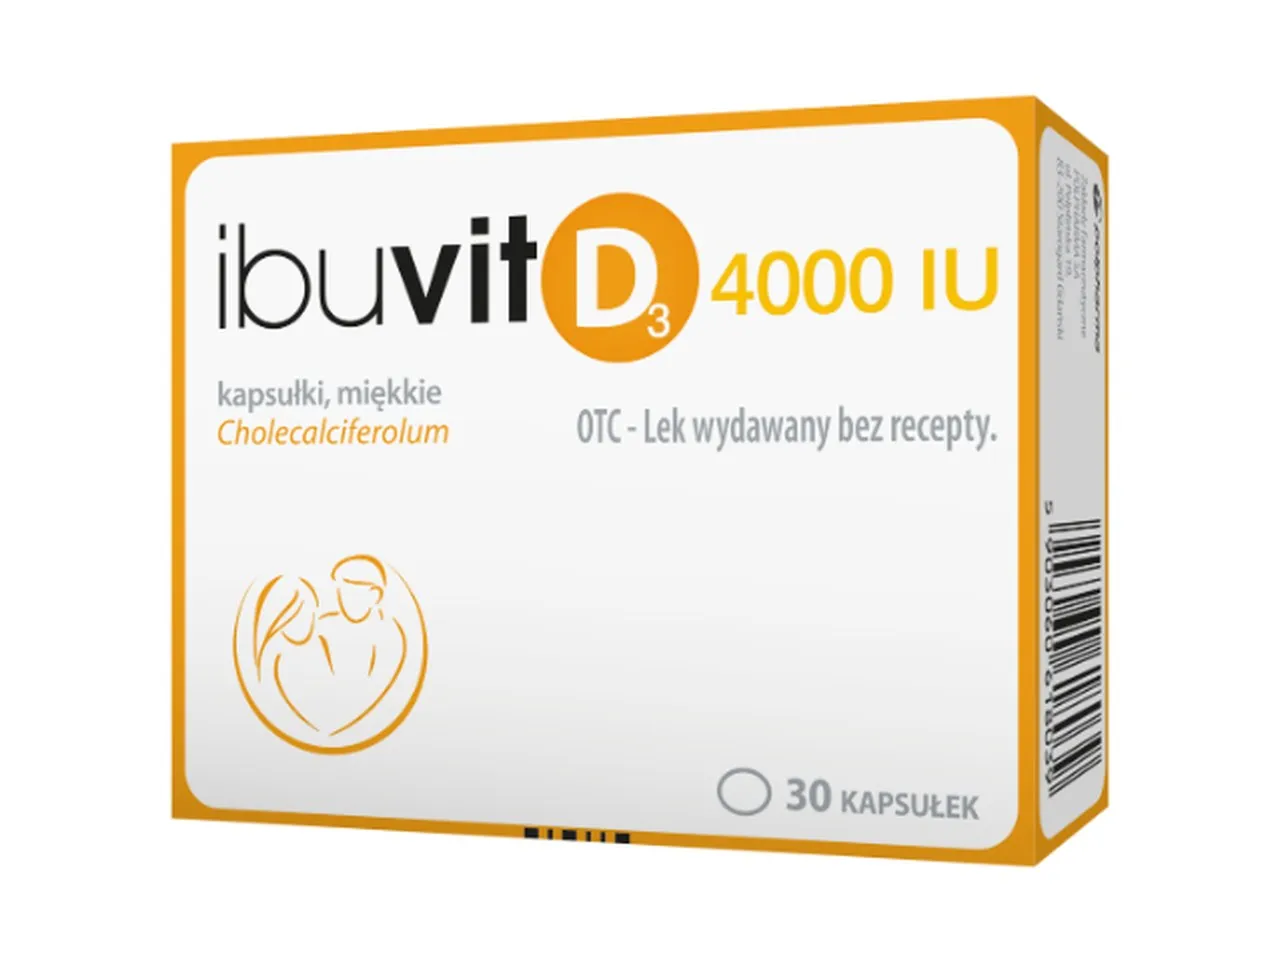 Ibuvit D3, 4000 IU, 30 kapsułek 